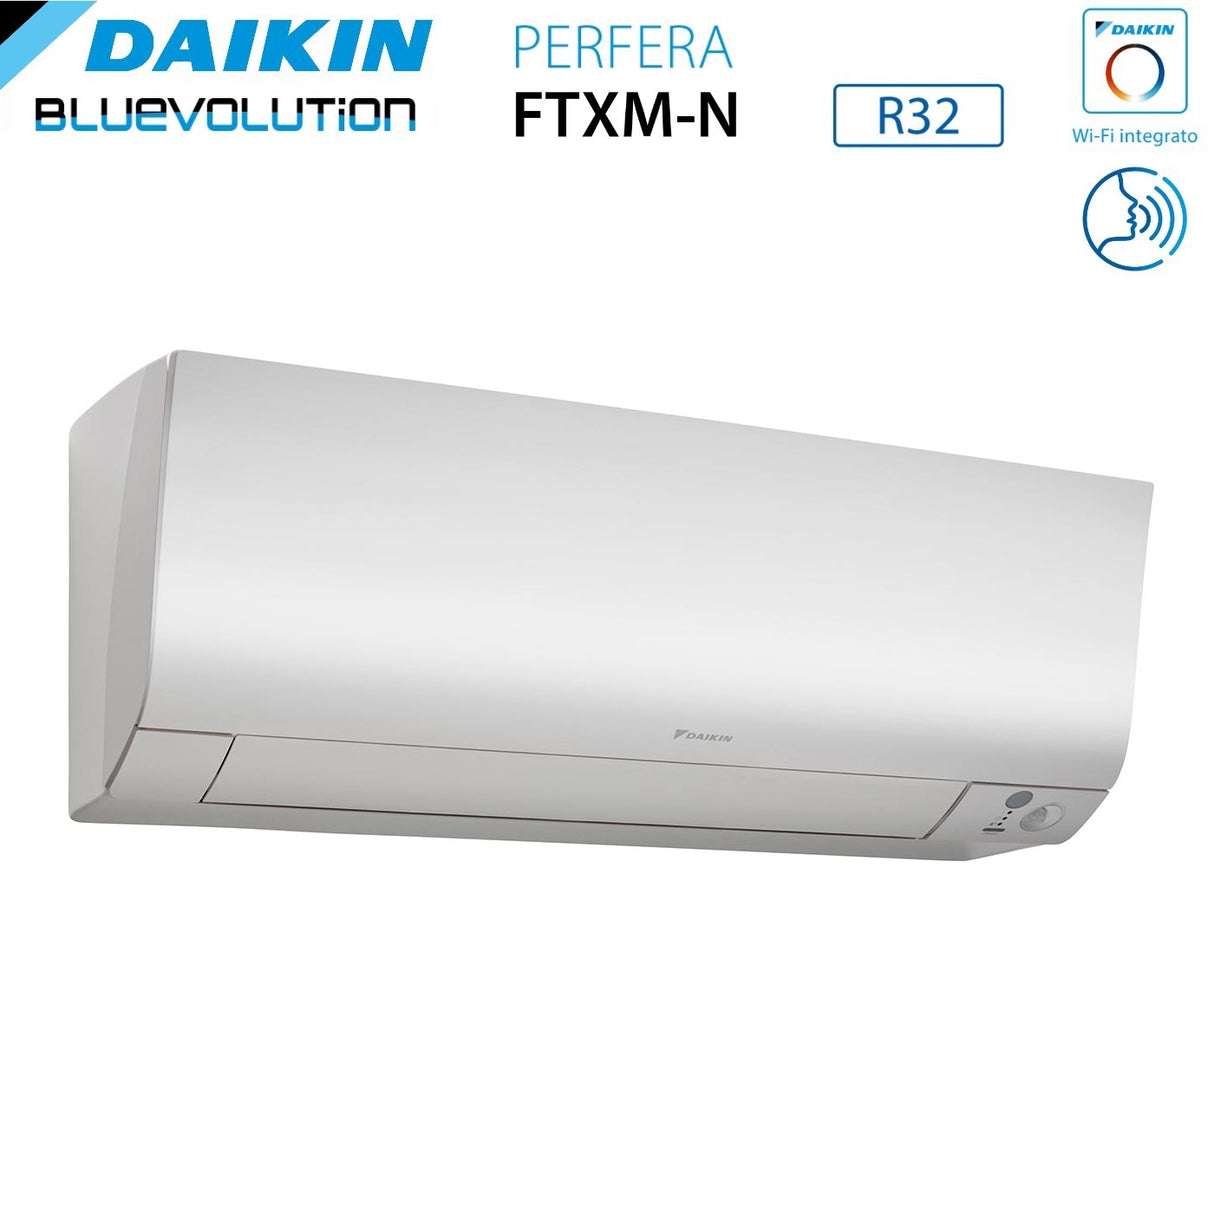 immagine-5-daikin-climatizzatore-condizionatore-daikin-bluevolution-dual-split-inverter-serie-ftxmn-perfera-912-con-2mxm40a-r-32-wi-fi-integrato-900012000-garanzia-italiana-ean-8059657007636